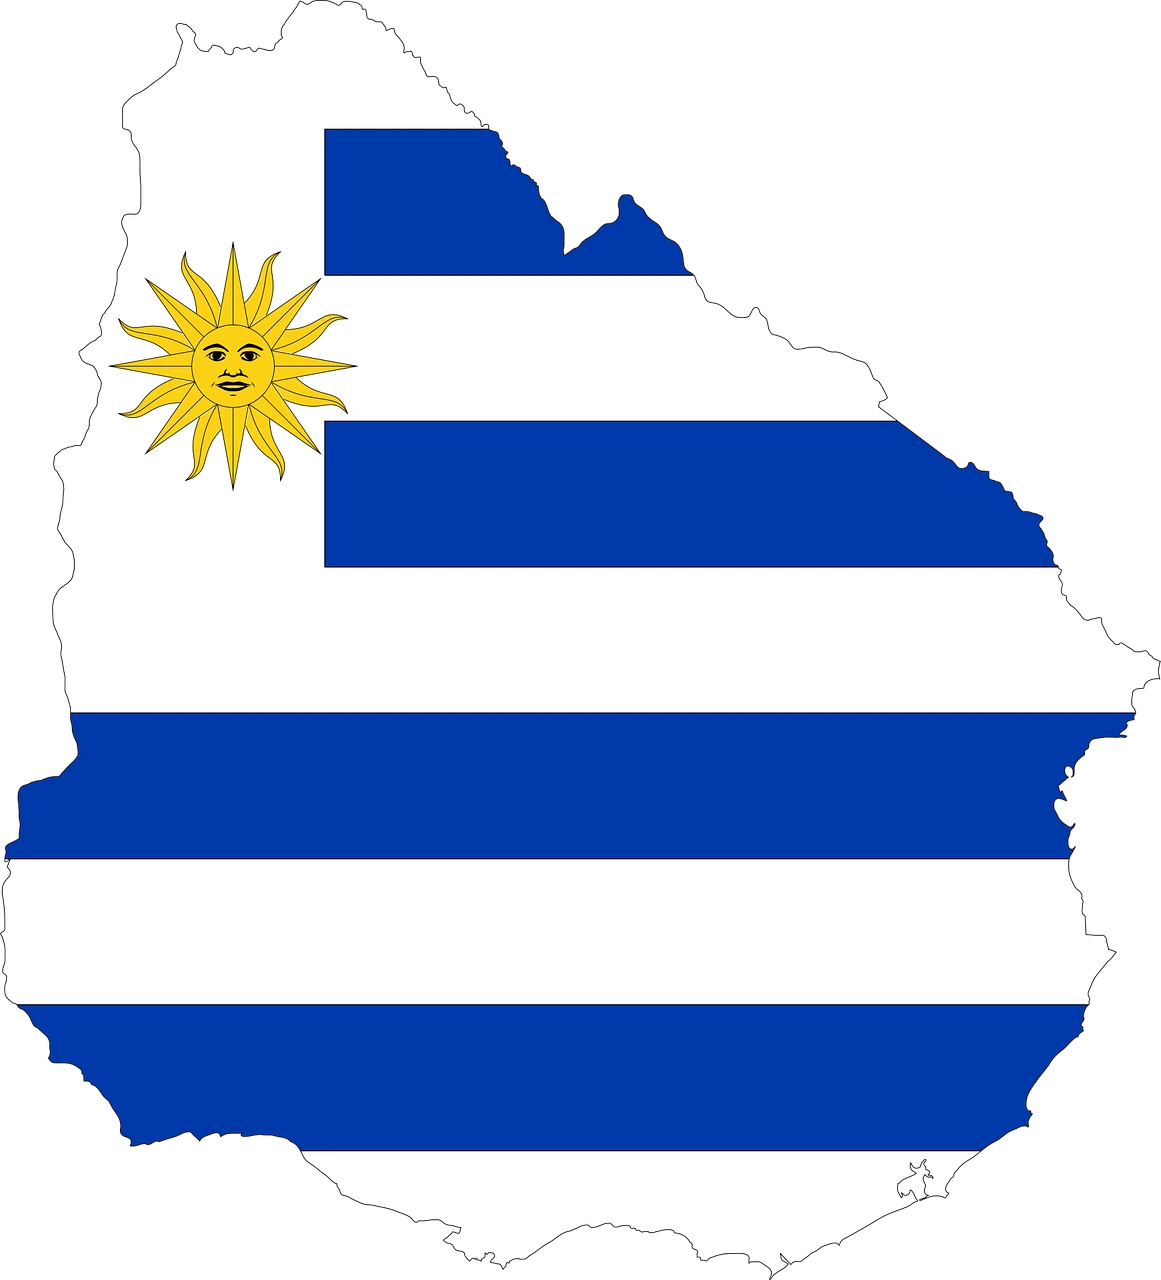 pourquoi l'uruguay à 4 étoiles sur son maillot